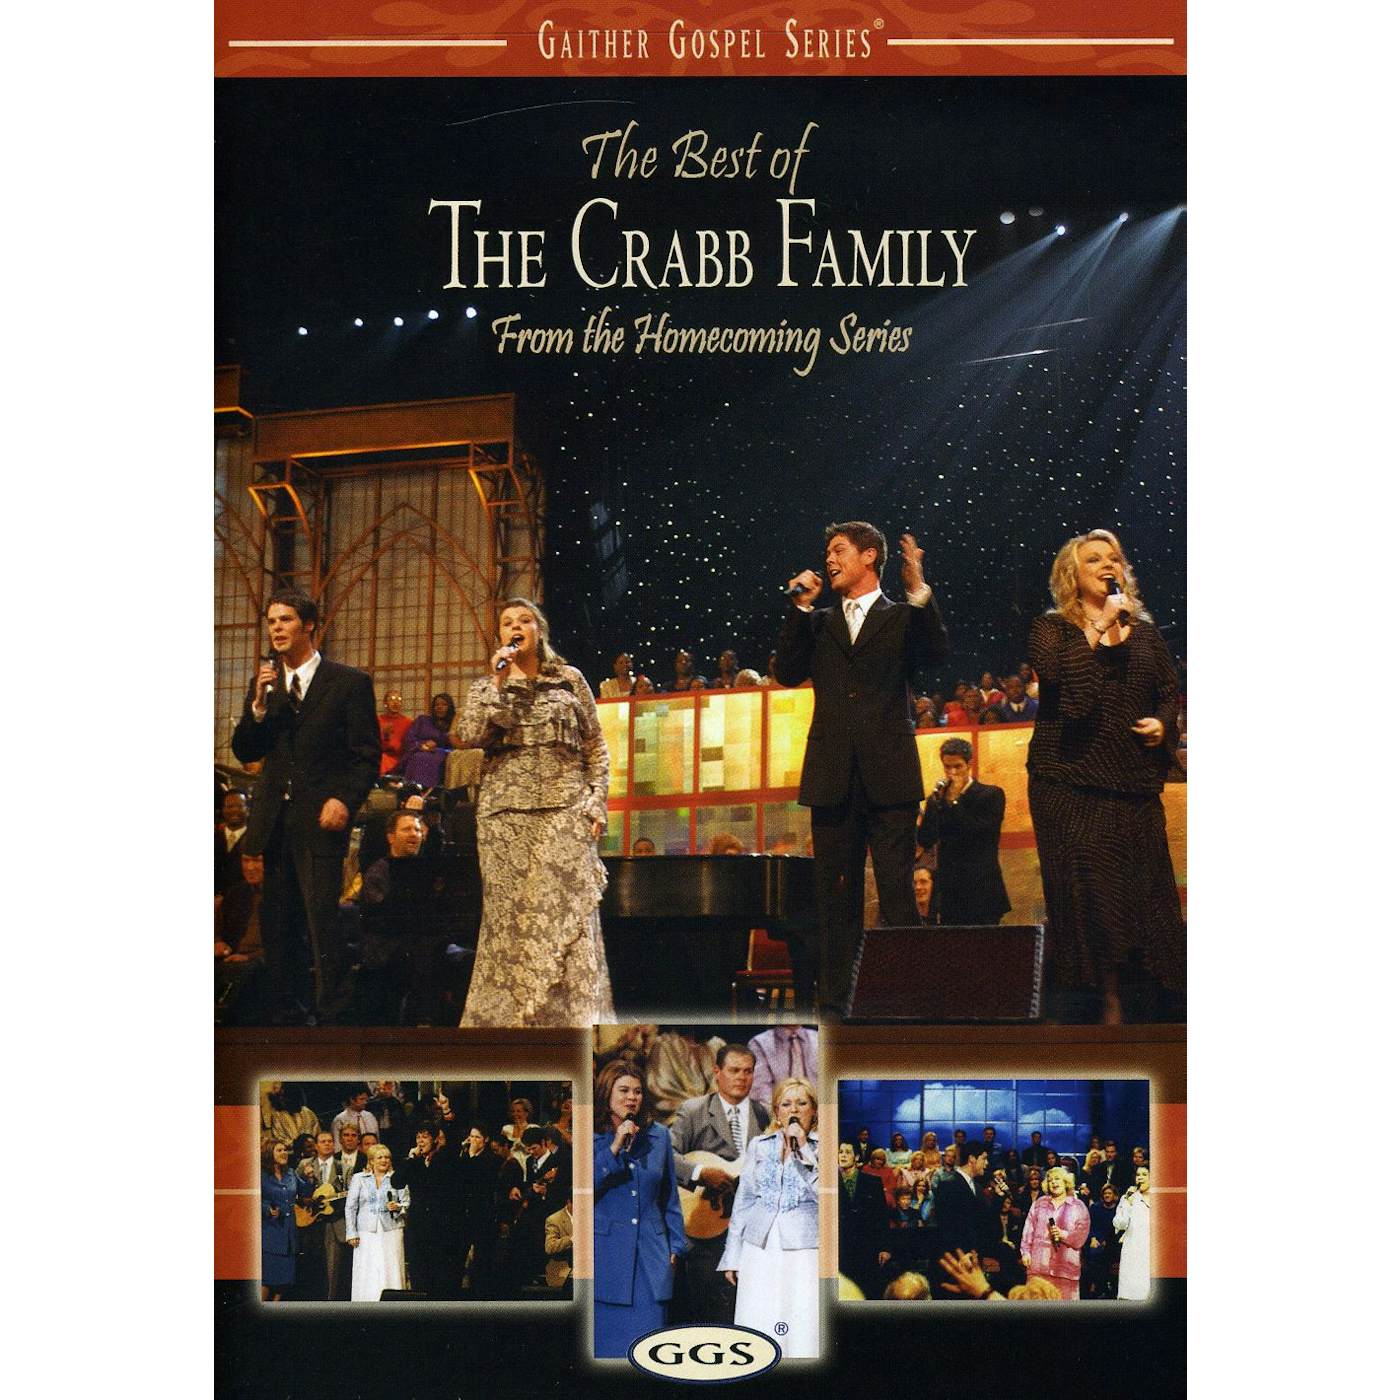 BEST OF THE CRABB FAMILY DVD